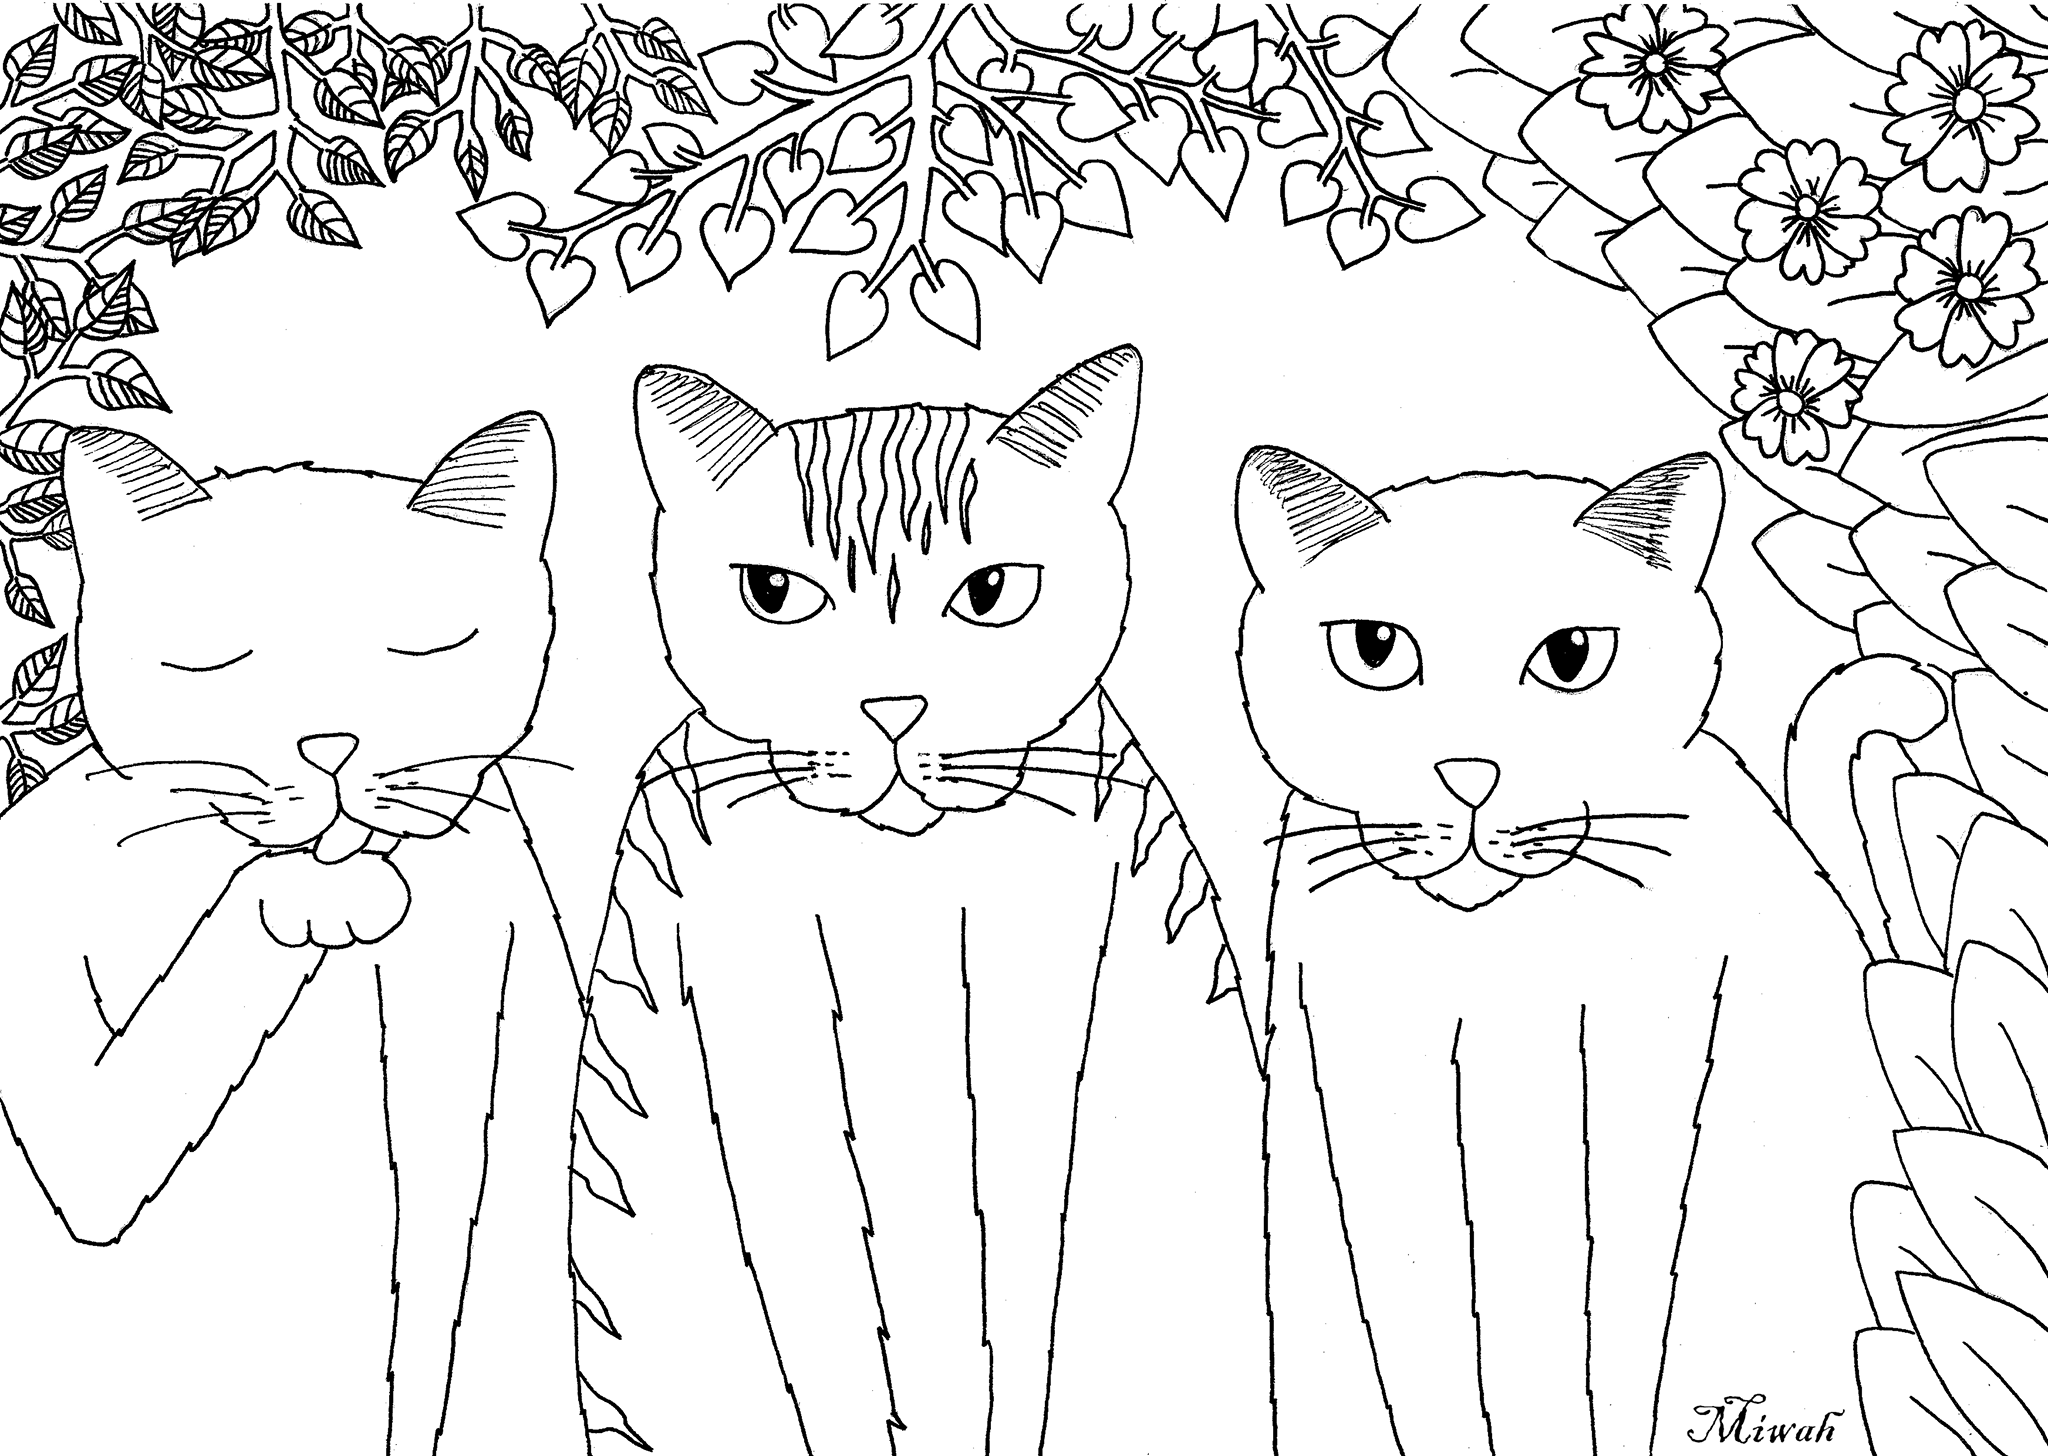 Desenhos grátis para colorir de Gatos para imprimir e colorir, para crianças